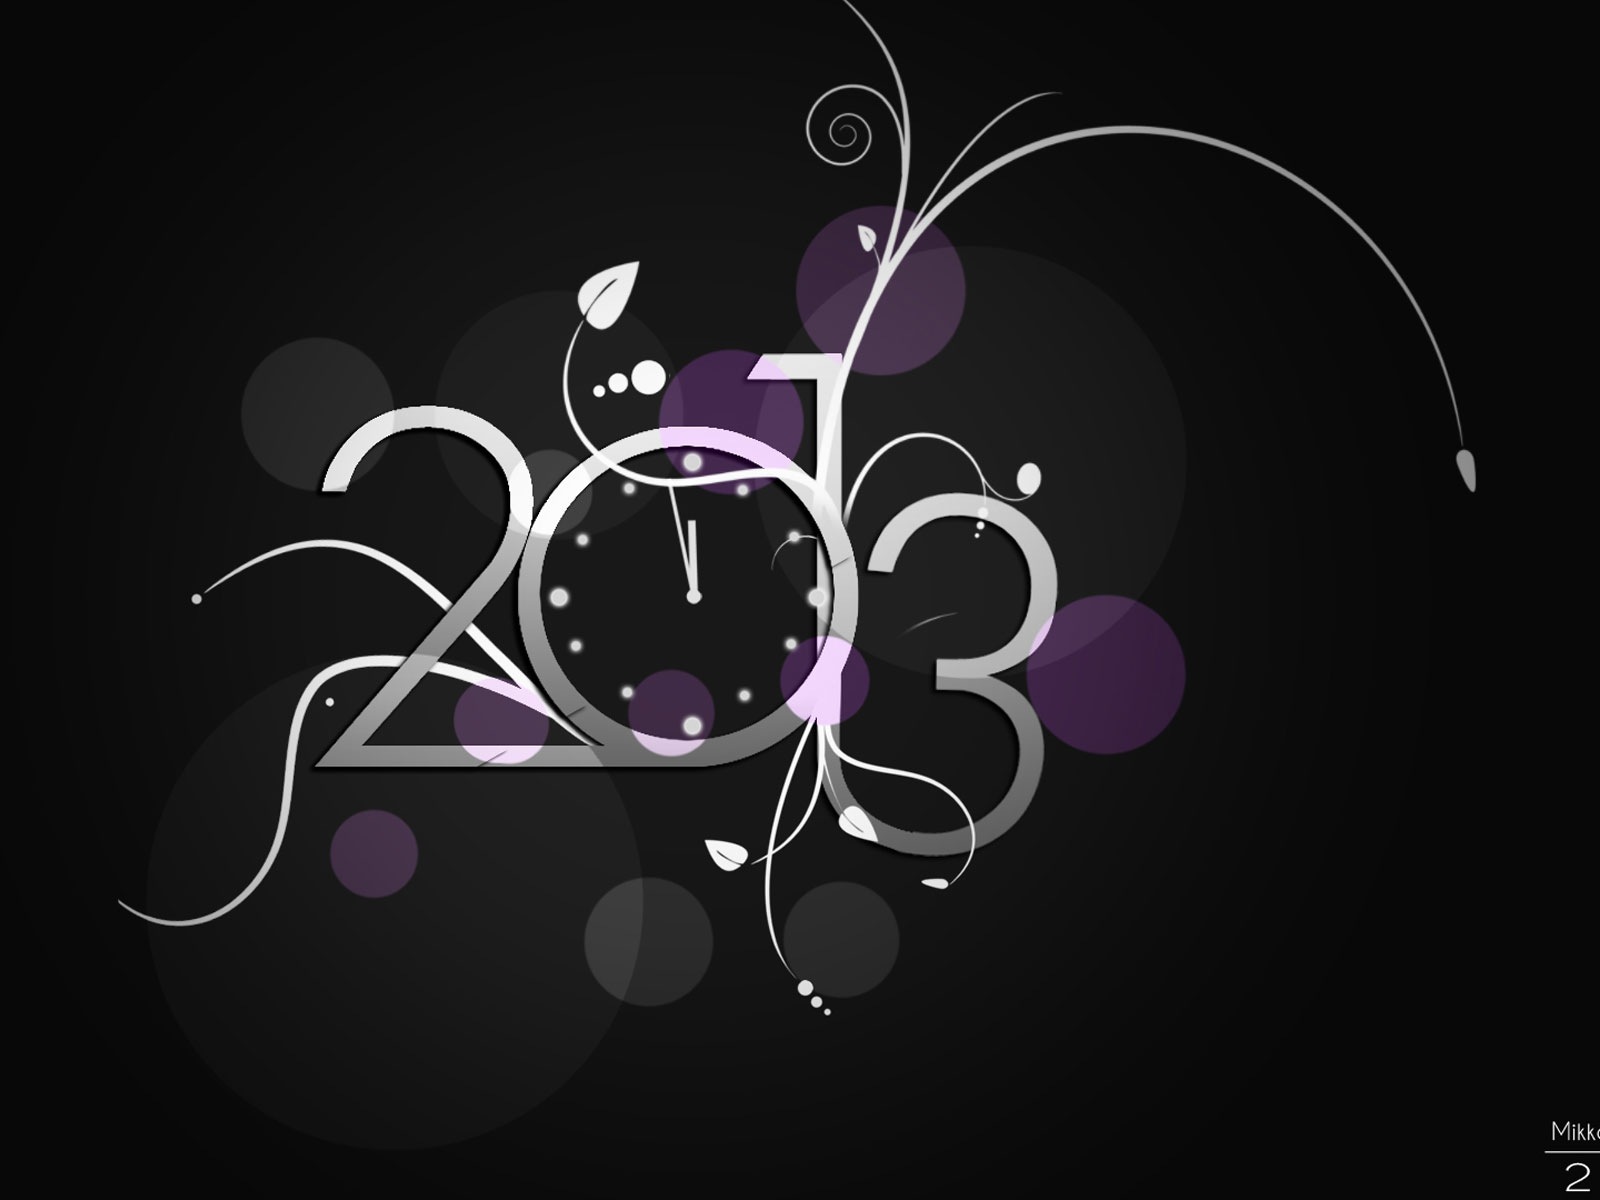 2013 Año Nuevo fondo de pantalla tema creativo (2) #12 - 1600x1200